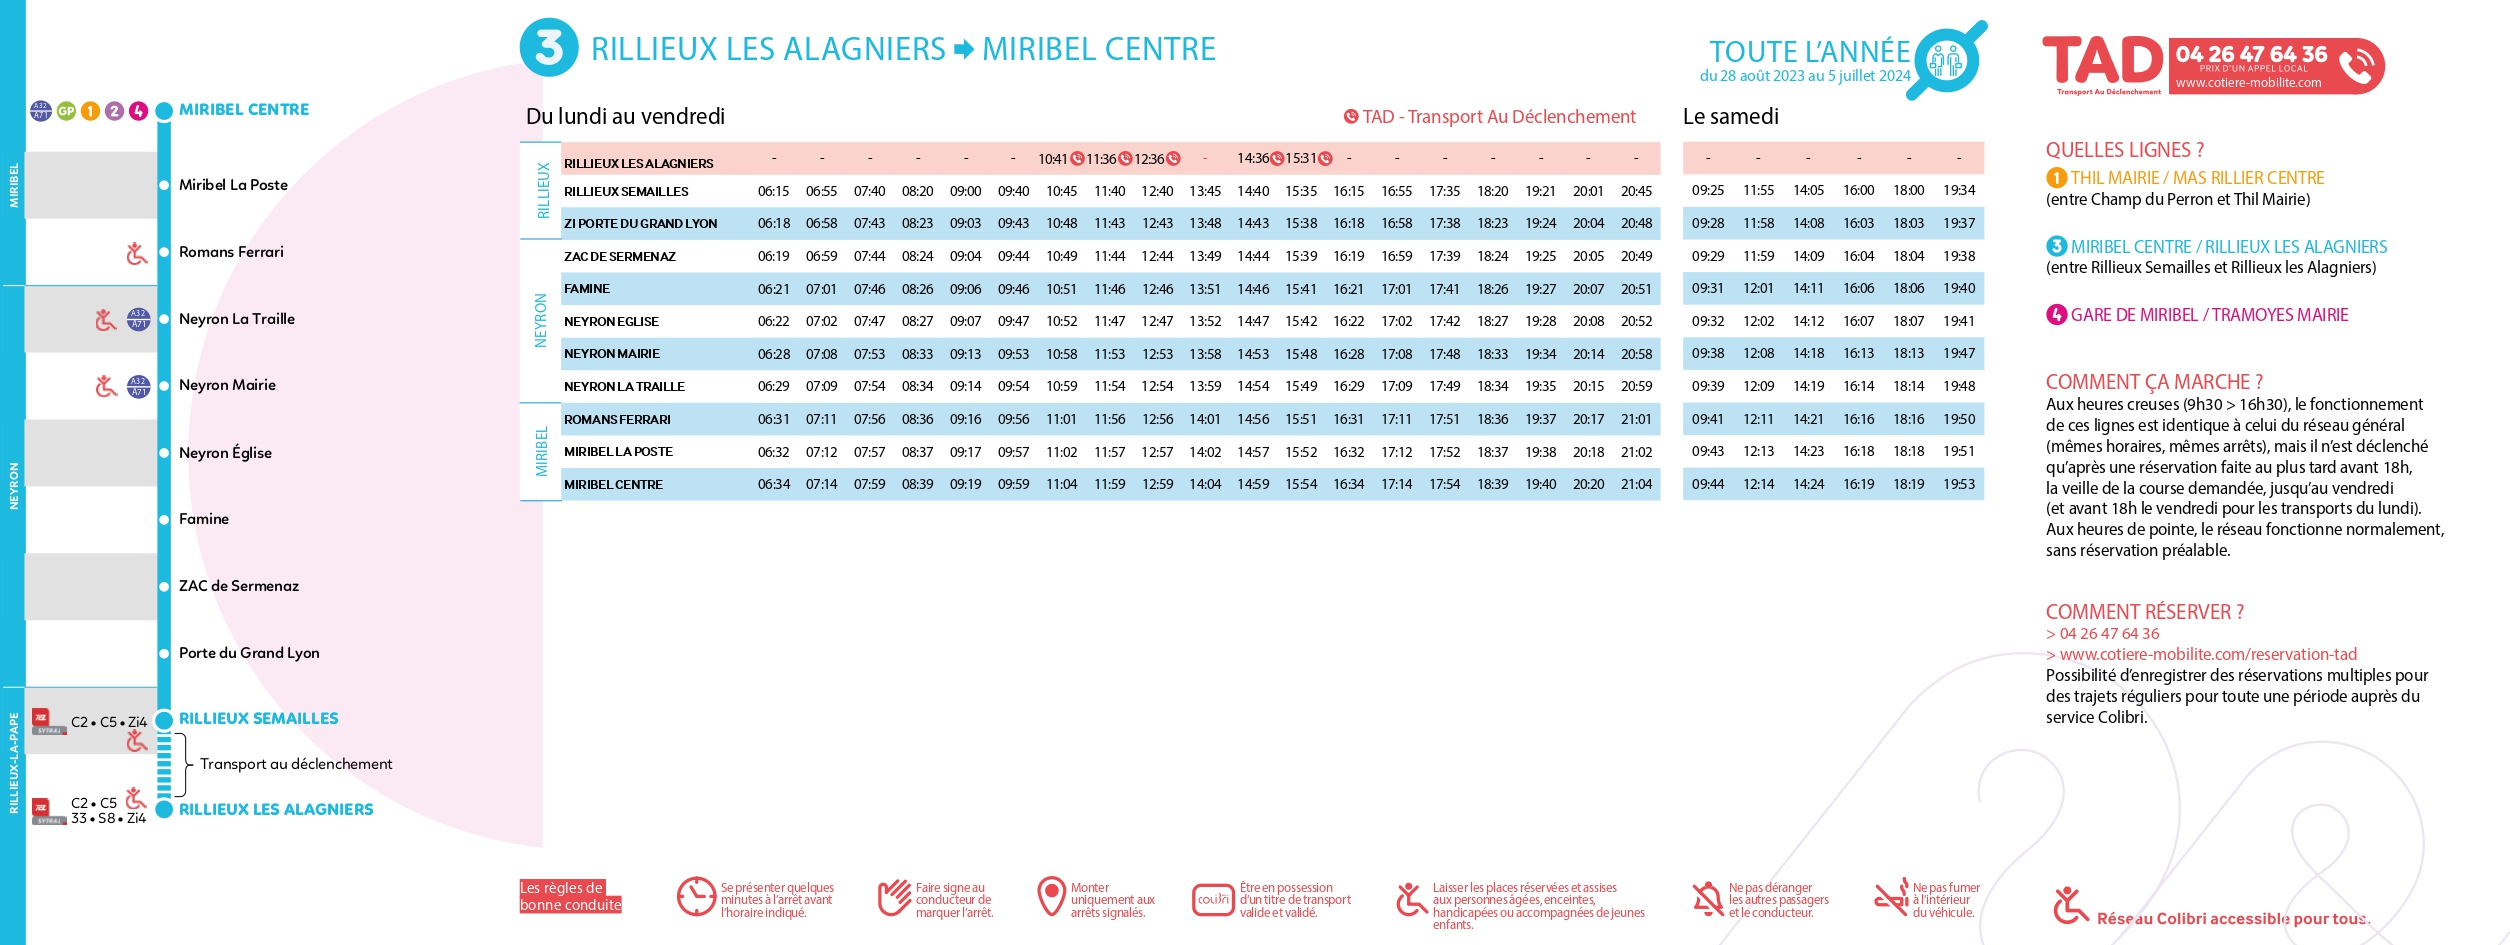 Réseau Colibri - Vos horaires de bus de septembre 2021 à juillet 2022